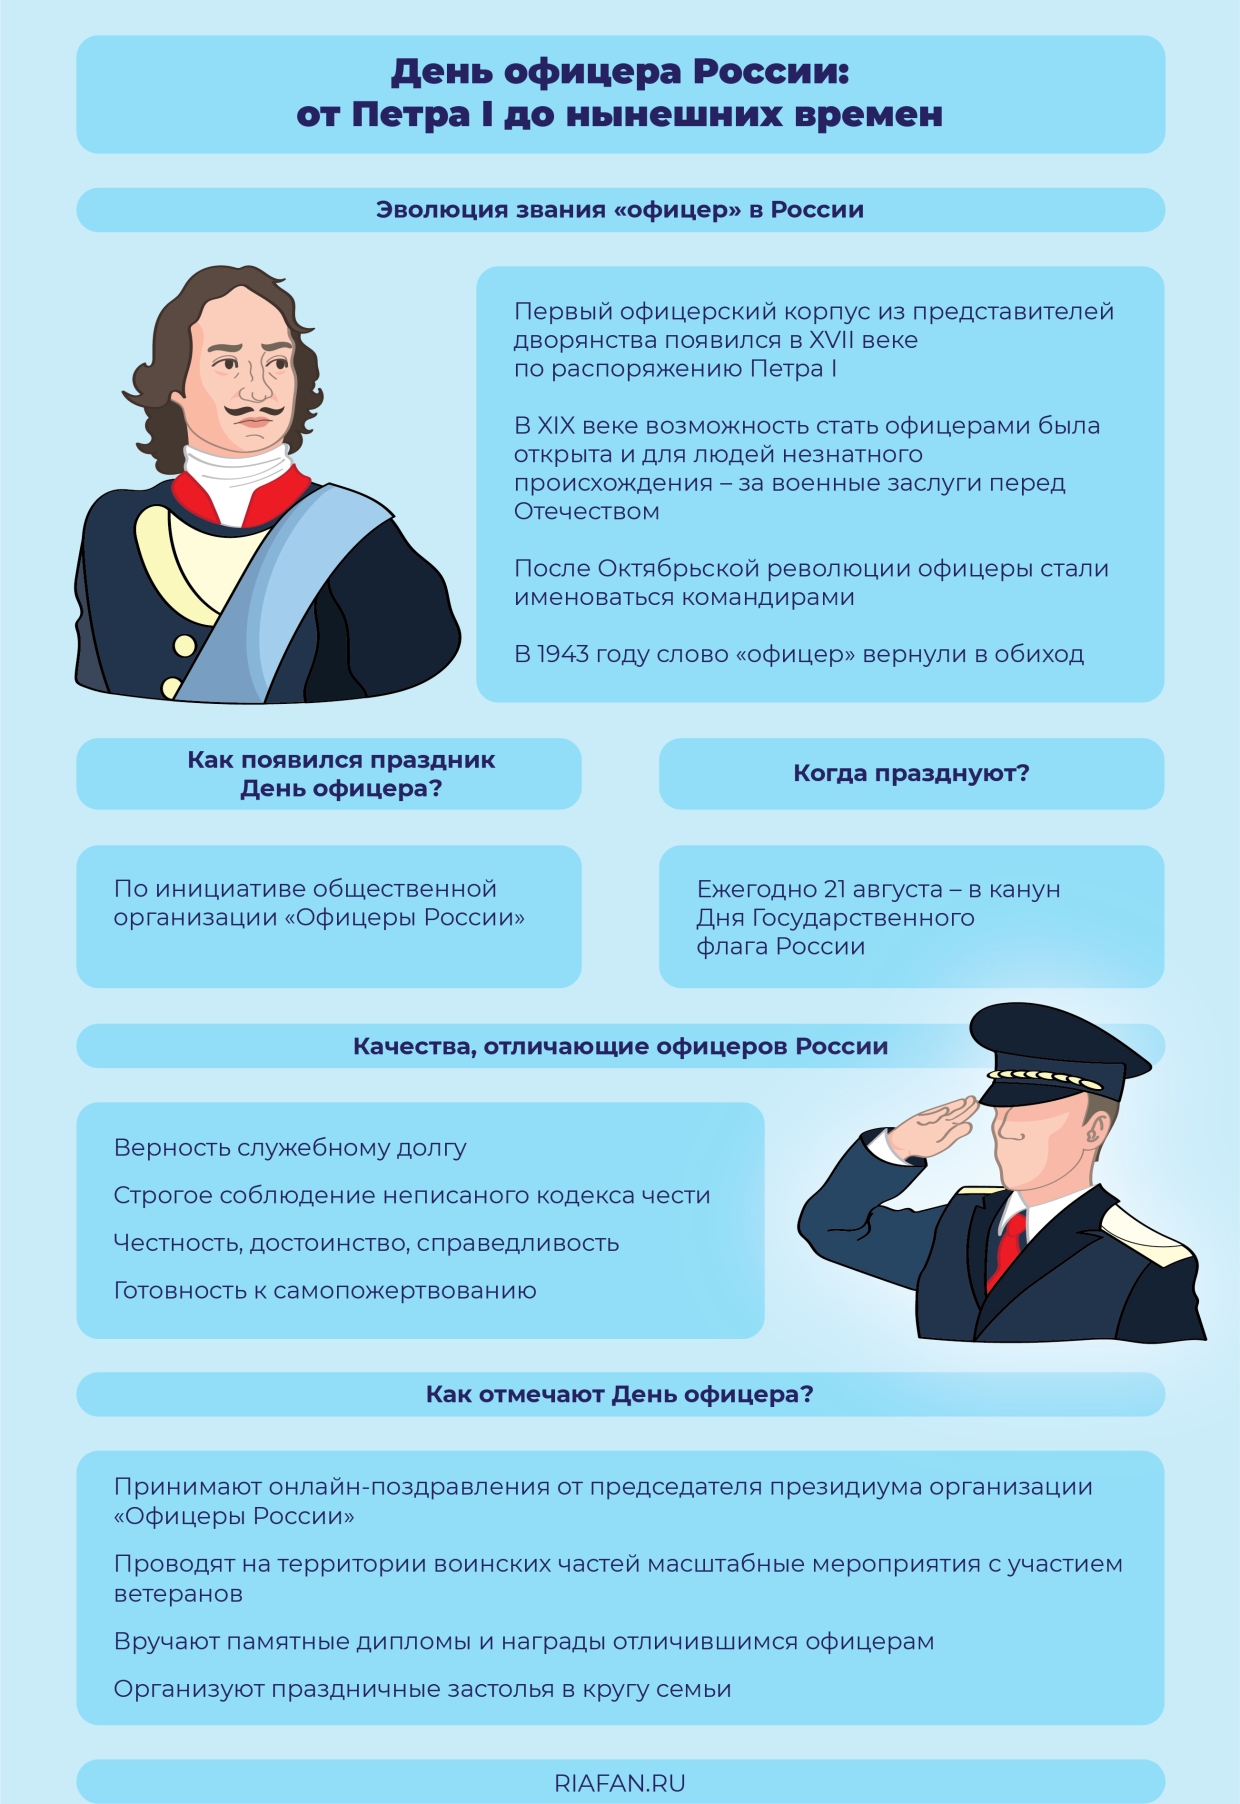 День офицера России — праздник довольно молодой, однако звание офицера появилось в стране еще в XVII веке